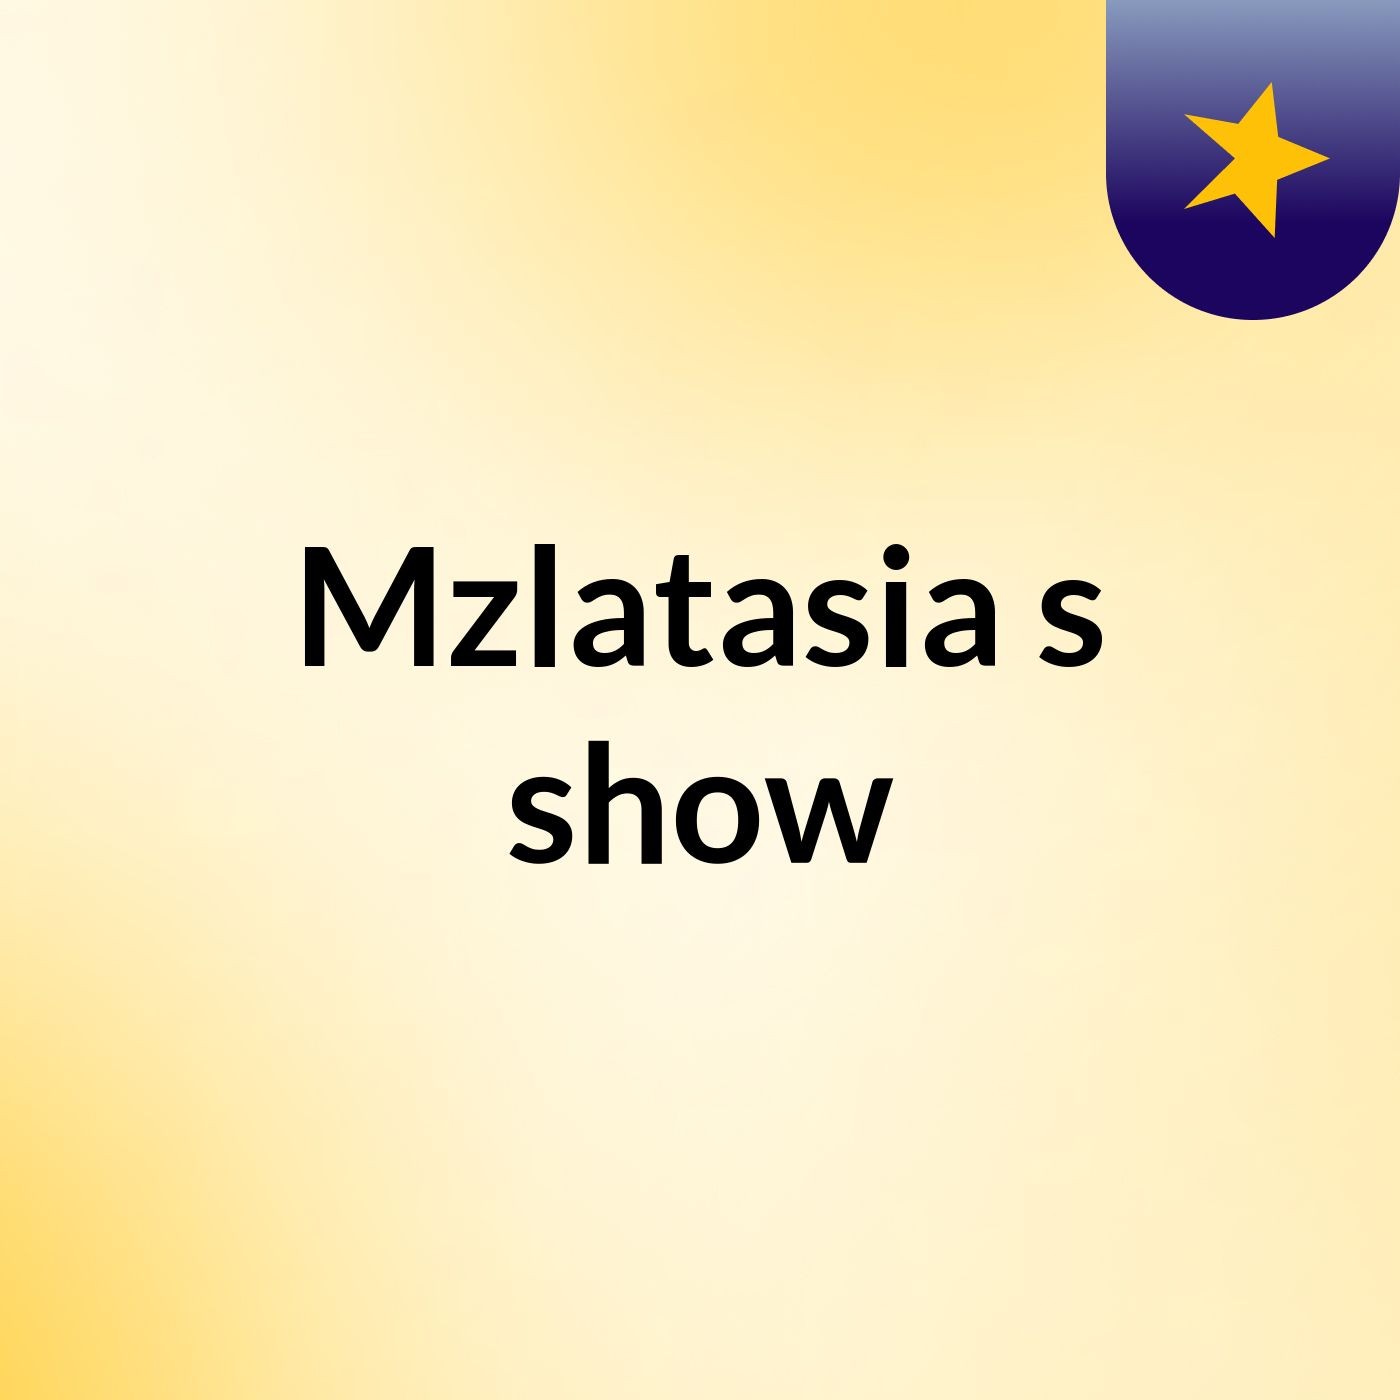 Mzlatasia's show